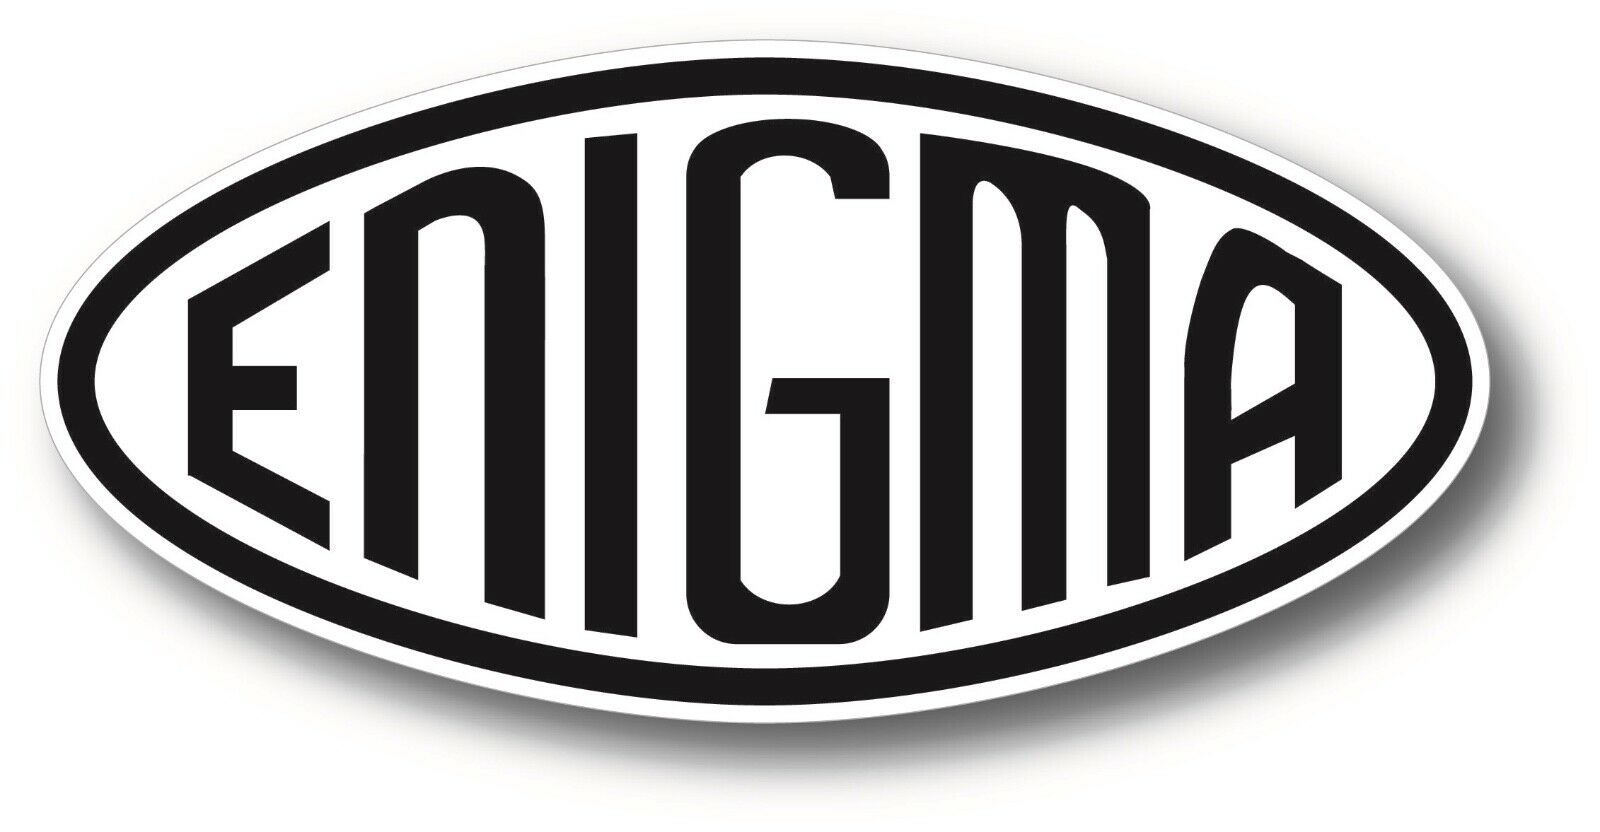 Enigma Machine Logo Black/white Vinyl Decal Sticker German Wwii History